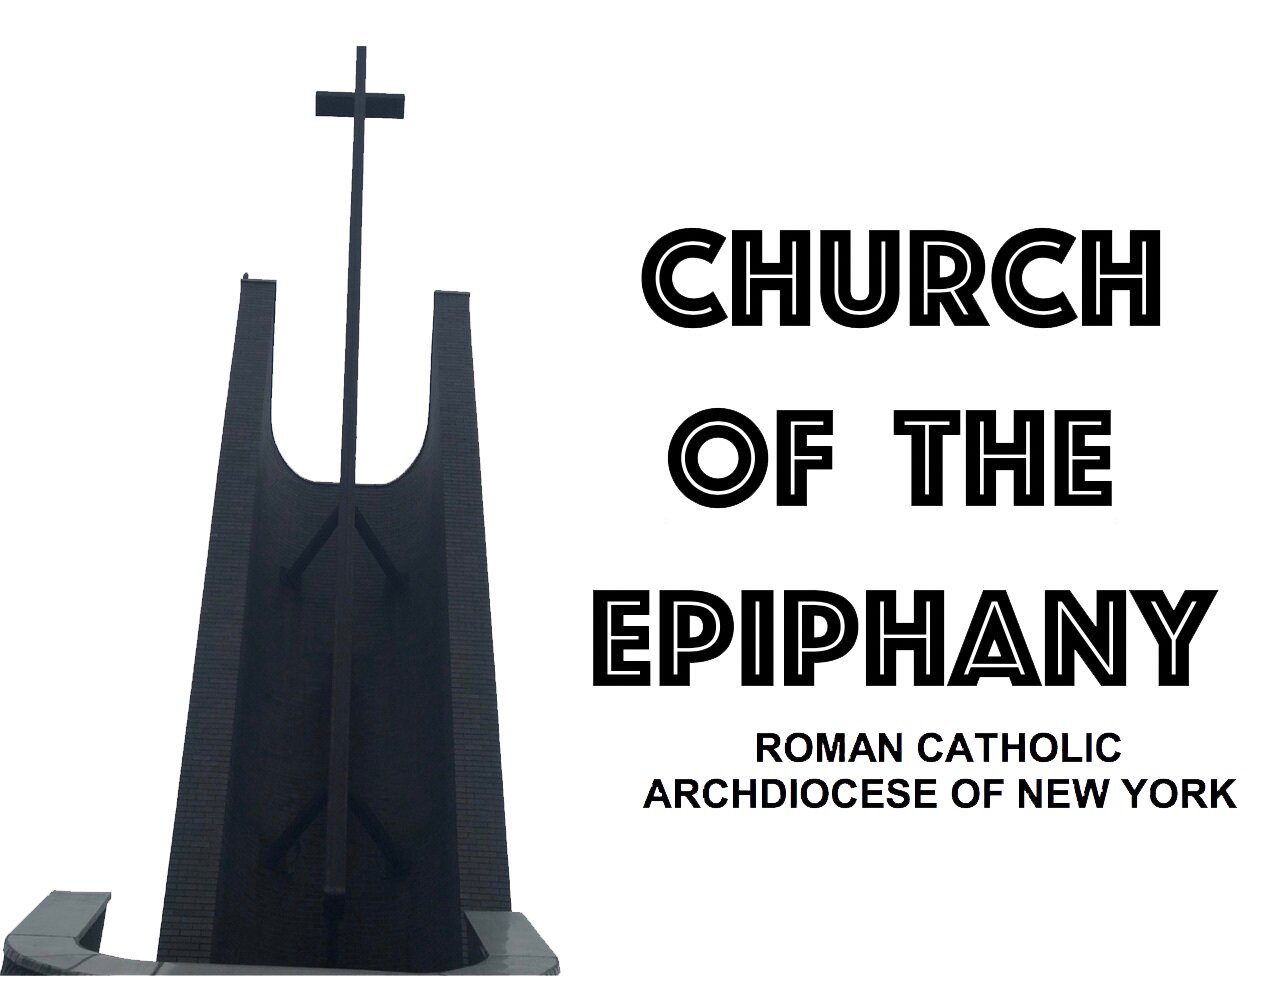 Roman Catholic Church of the Epiphany